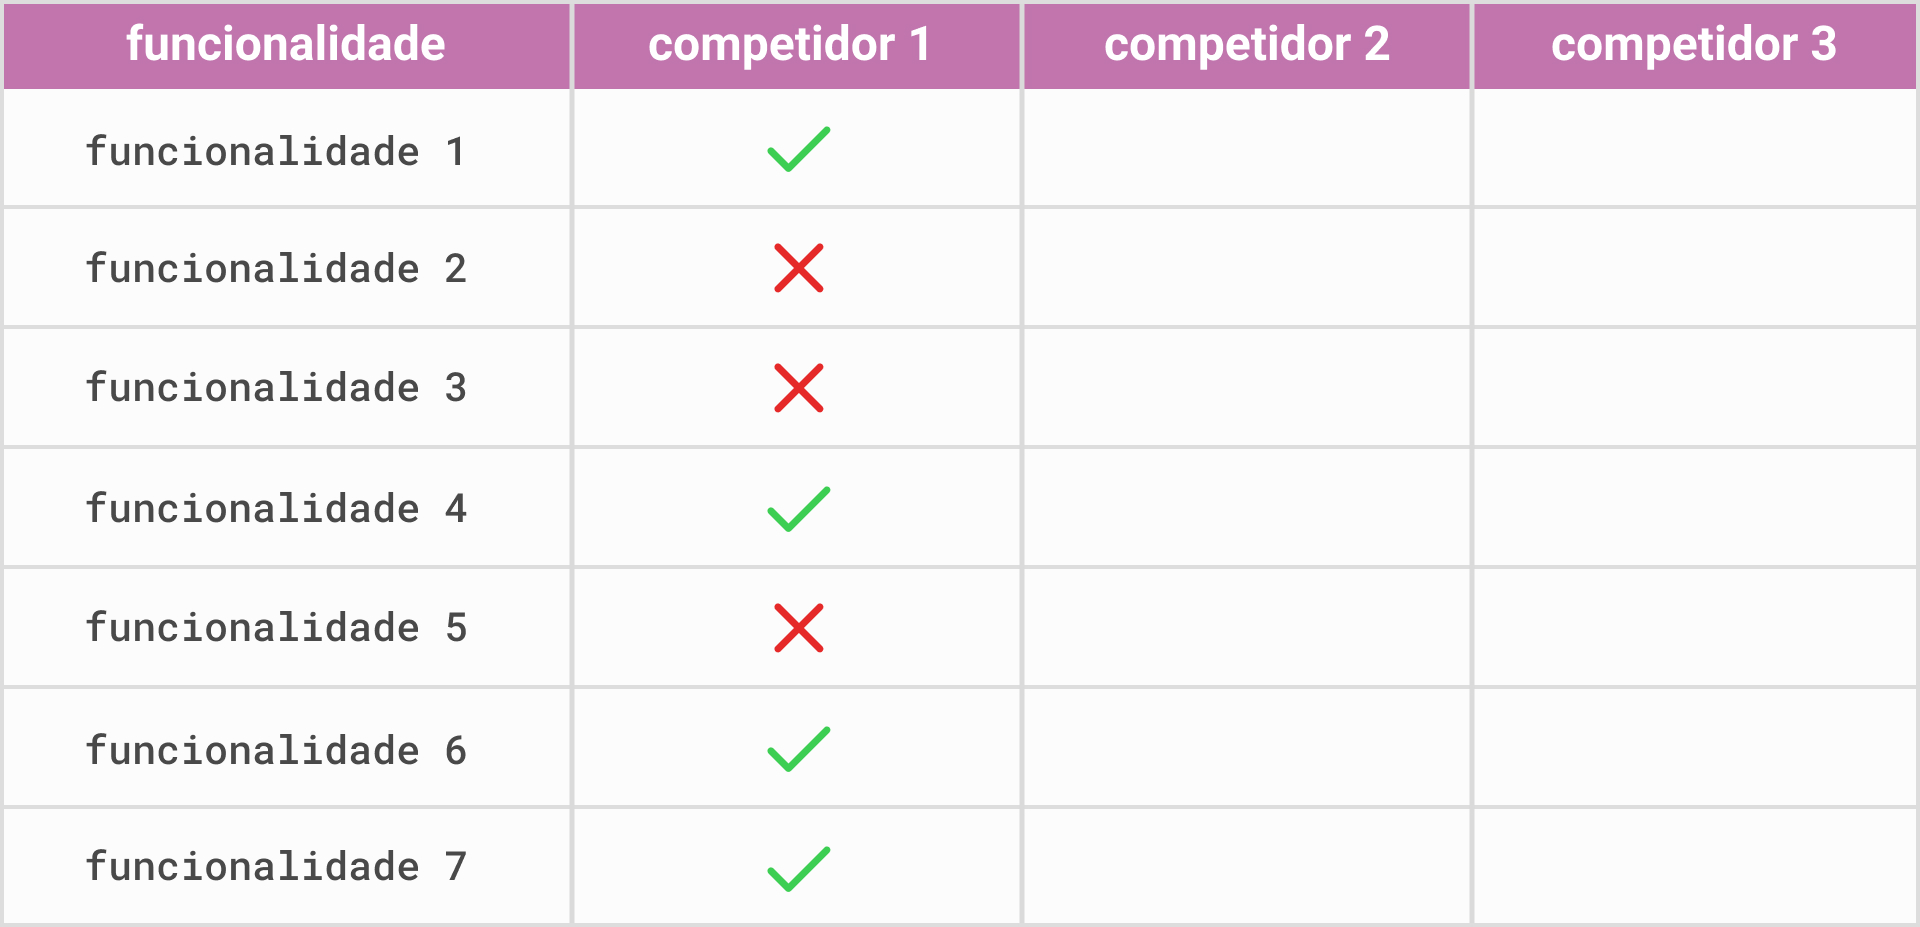 Imagem que mostra uma tabela que compara funcionalidades de um produto de diferentes competidores. Há 4 colunas: a primeira é funcionalidade; a segunda, competidor 1; a terceira, competidor 2; a quarta e última coluna é competidor 3.